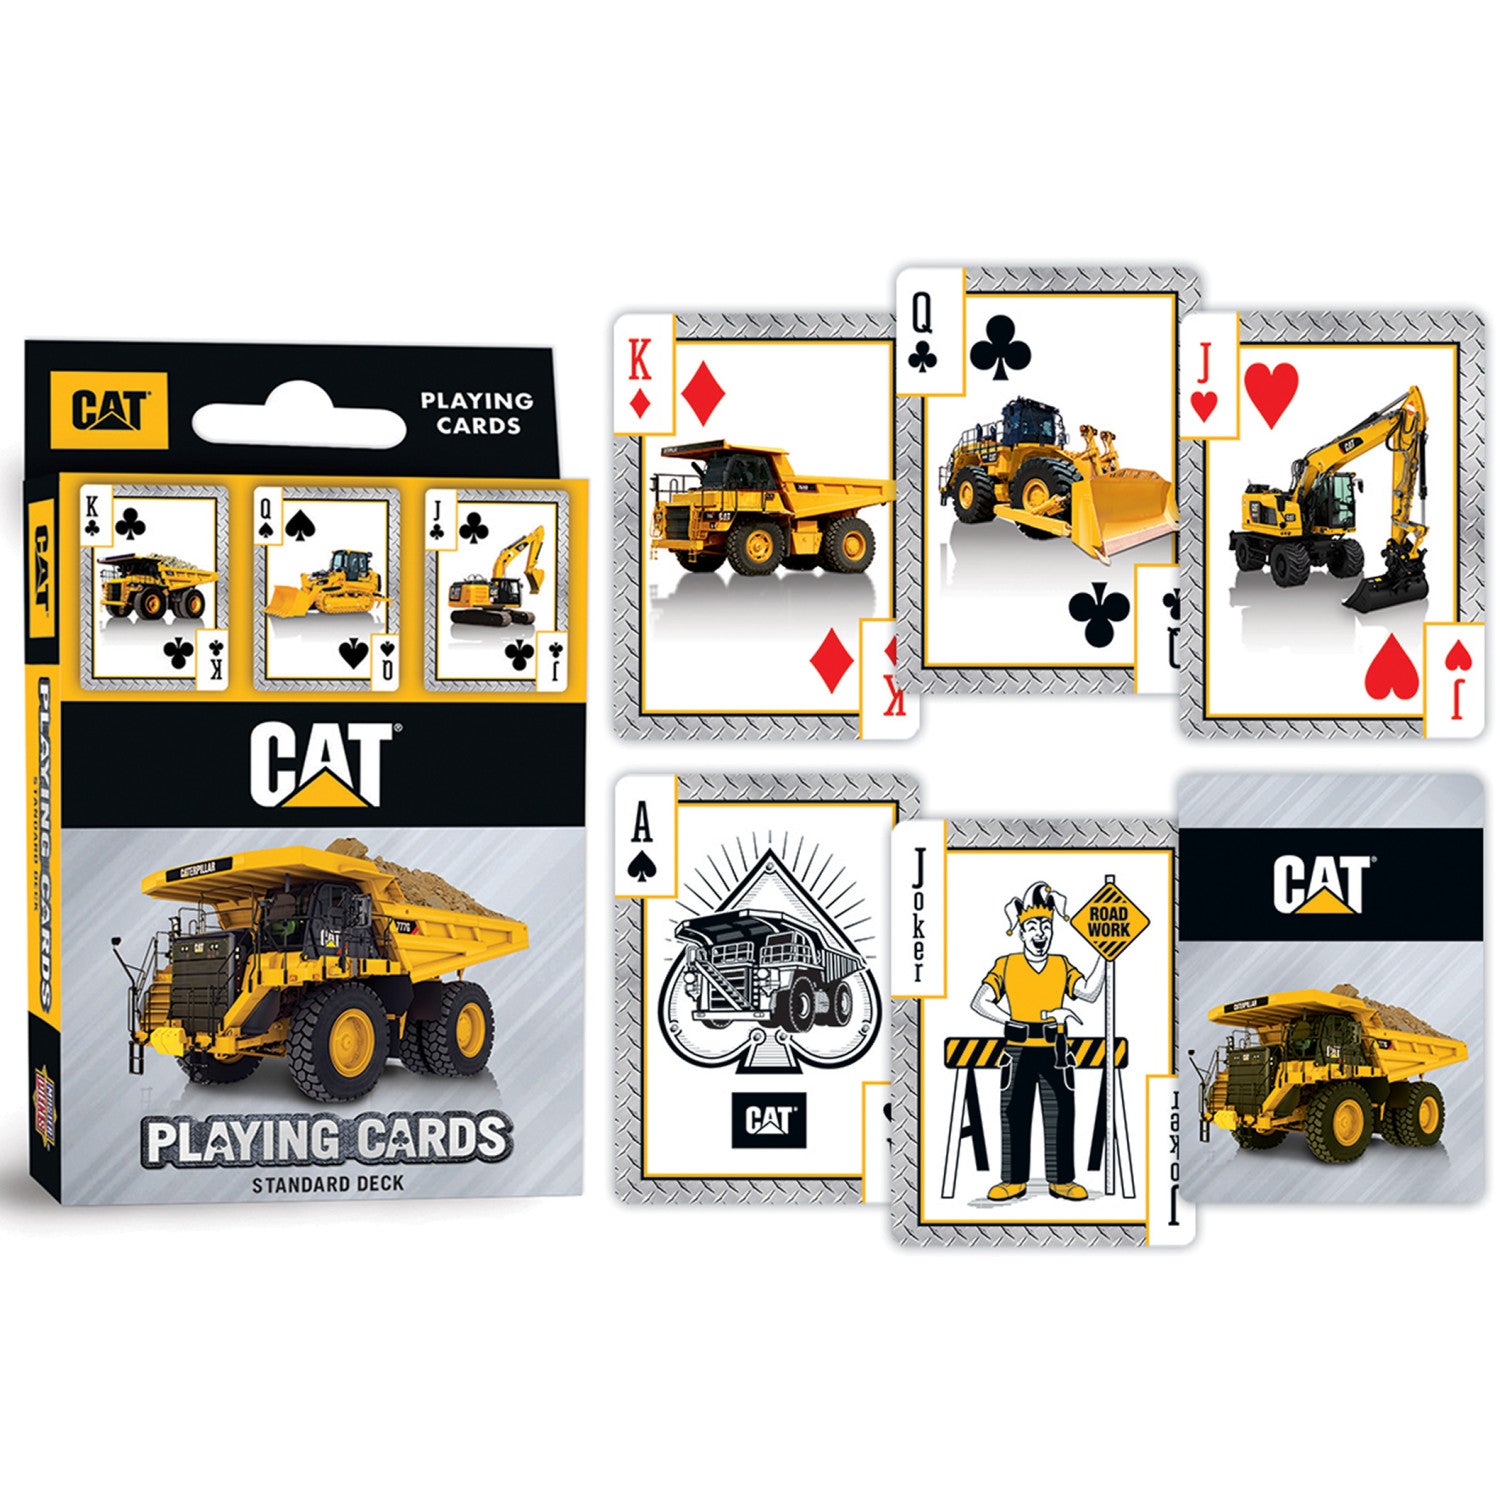 CAT - Caterpillar Playing Cards - 54 Card Deck